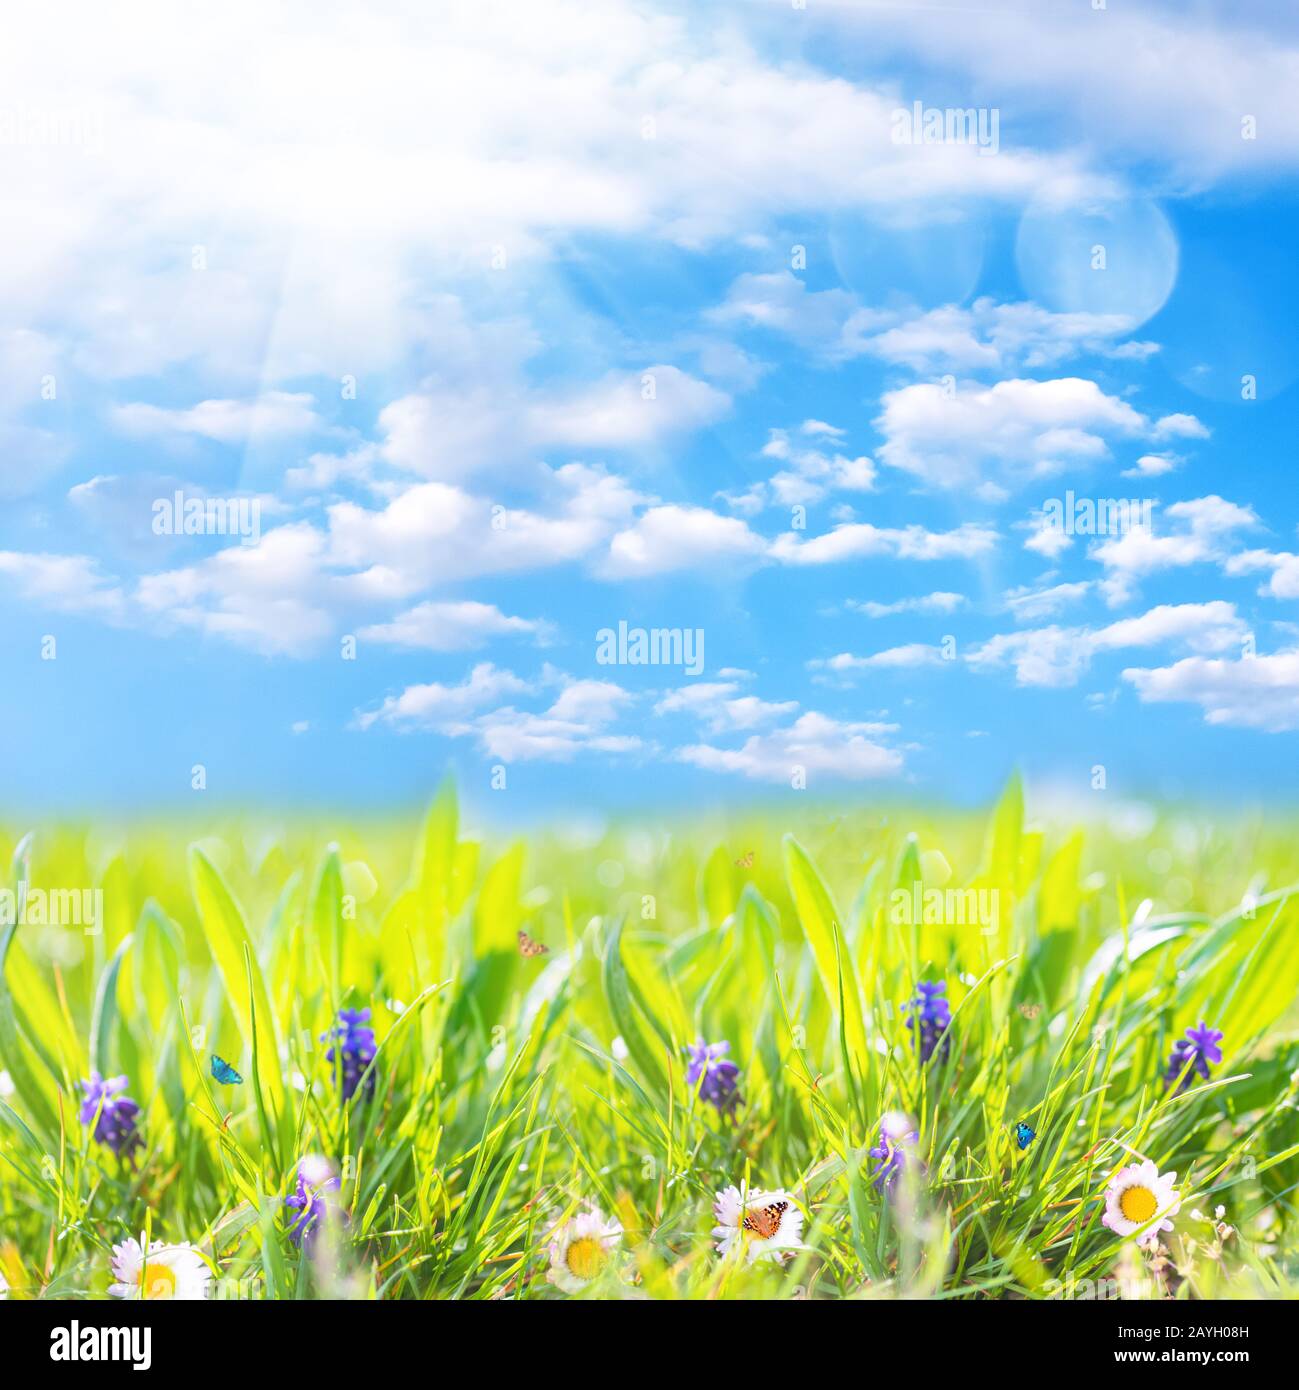 Margherite di camomilla in campo verde con sole e farfalle volanti. Paesaggio naturale estivo con cielo blu e nuvole bianche Foto Stock